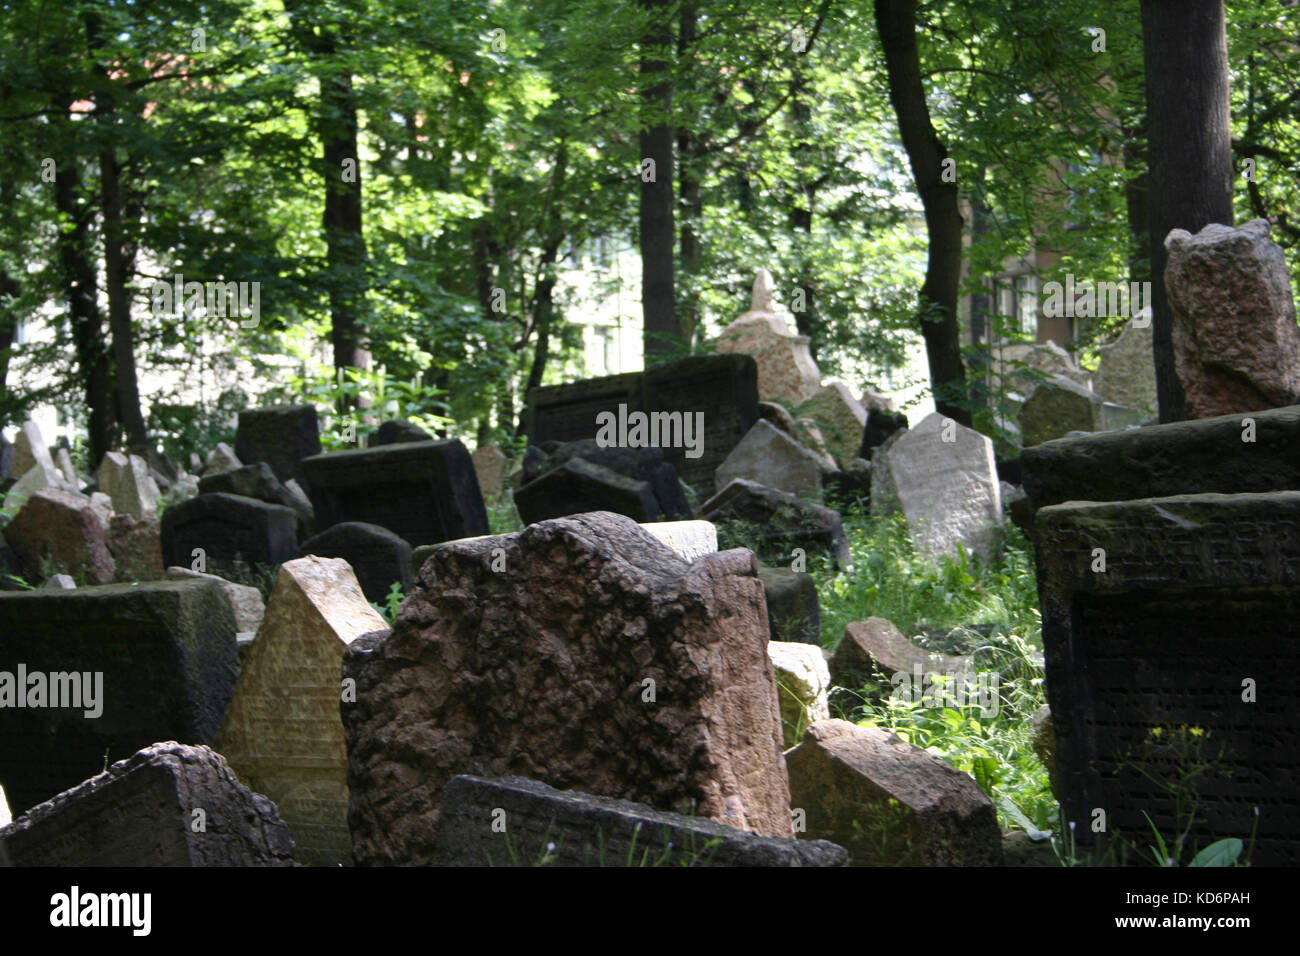 Cimetière juif de Prague dans le Quartier Juif Josefov, vue sur- pierres tombales. Cimetière du 15ème siècle. En raison des restrictions à la communauté a été forcé d'enterrer les corps sur le dessus de l'autre - d'être pensée profonde 12 Banque D'Images